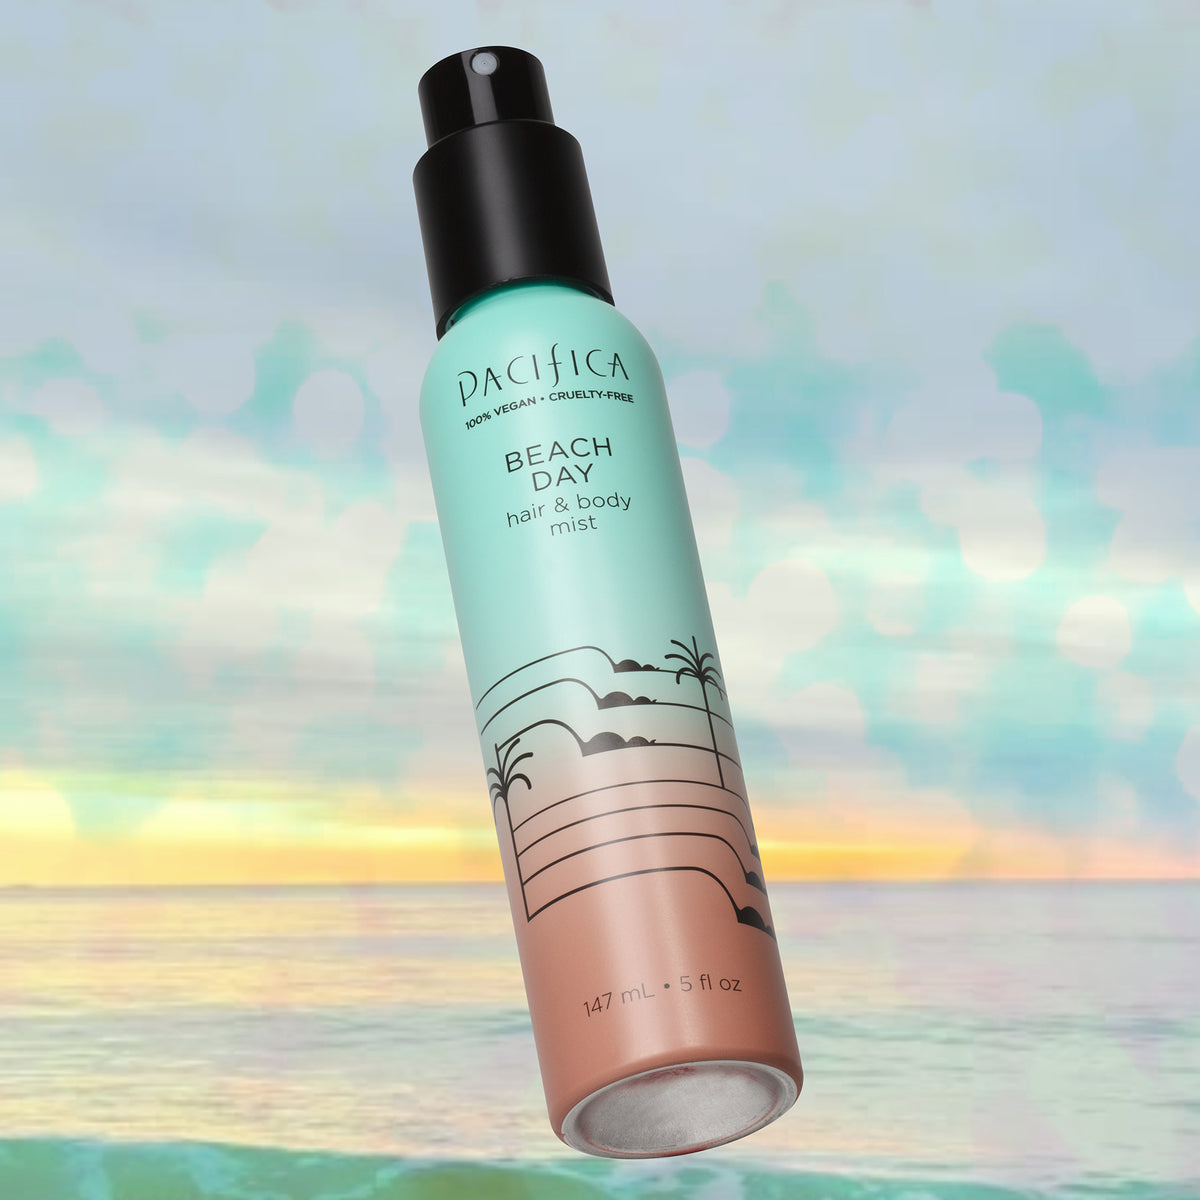 Beach Day Hair & Body Mist - Fragrance - Pacifica Beauty